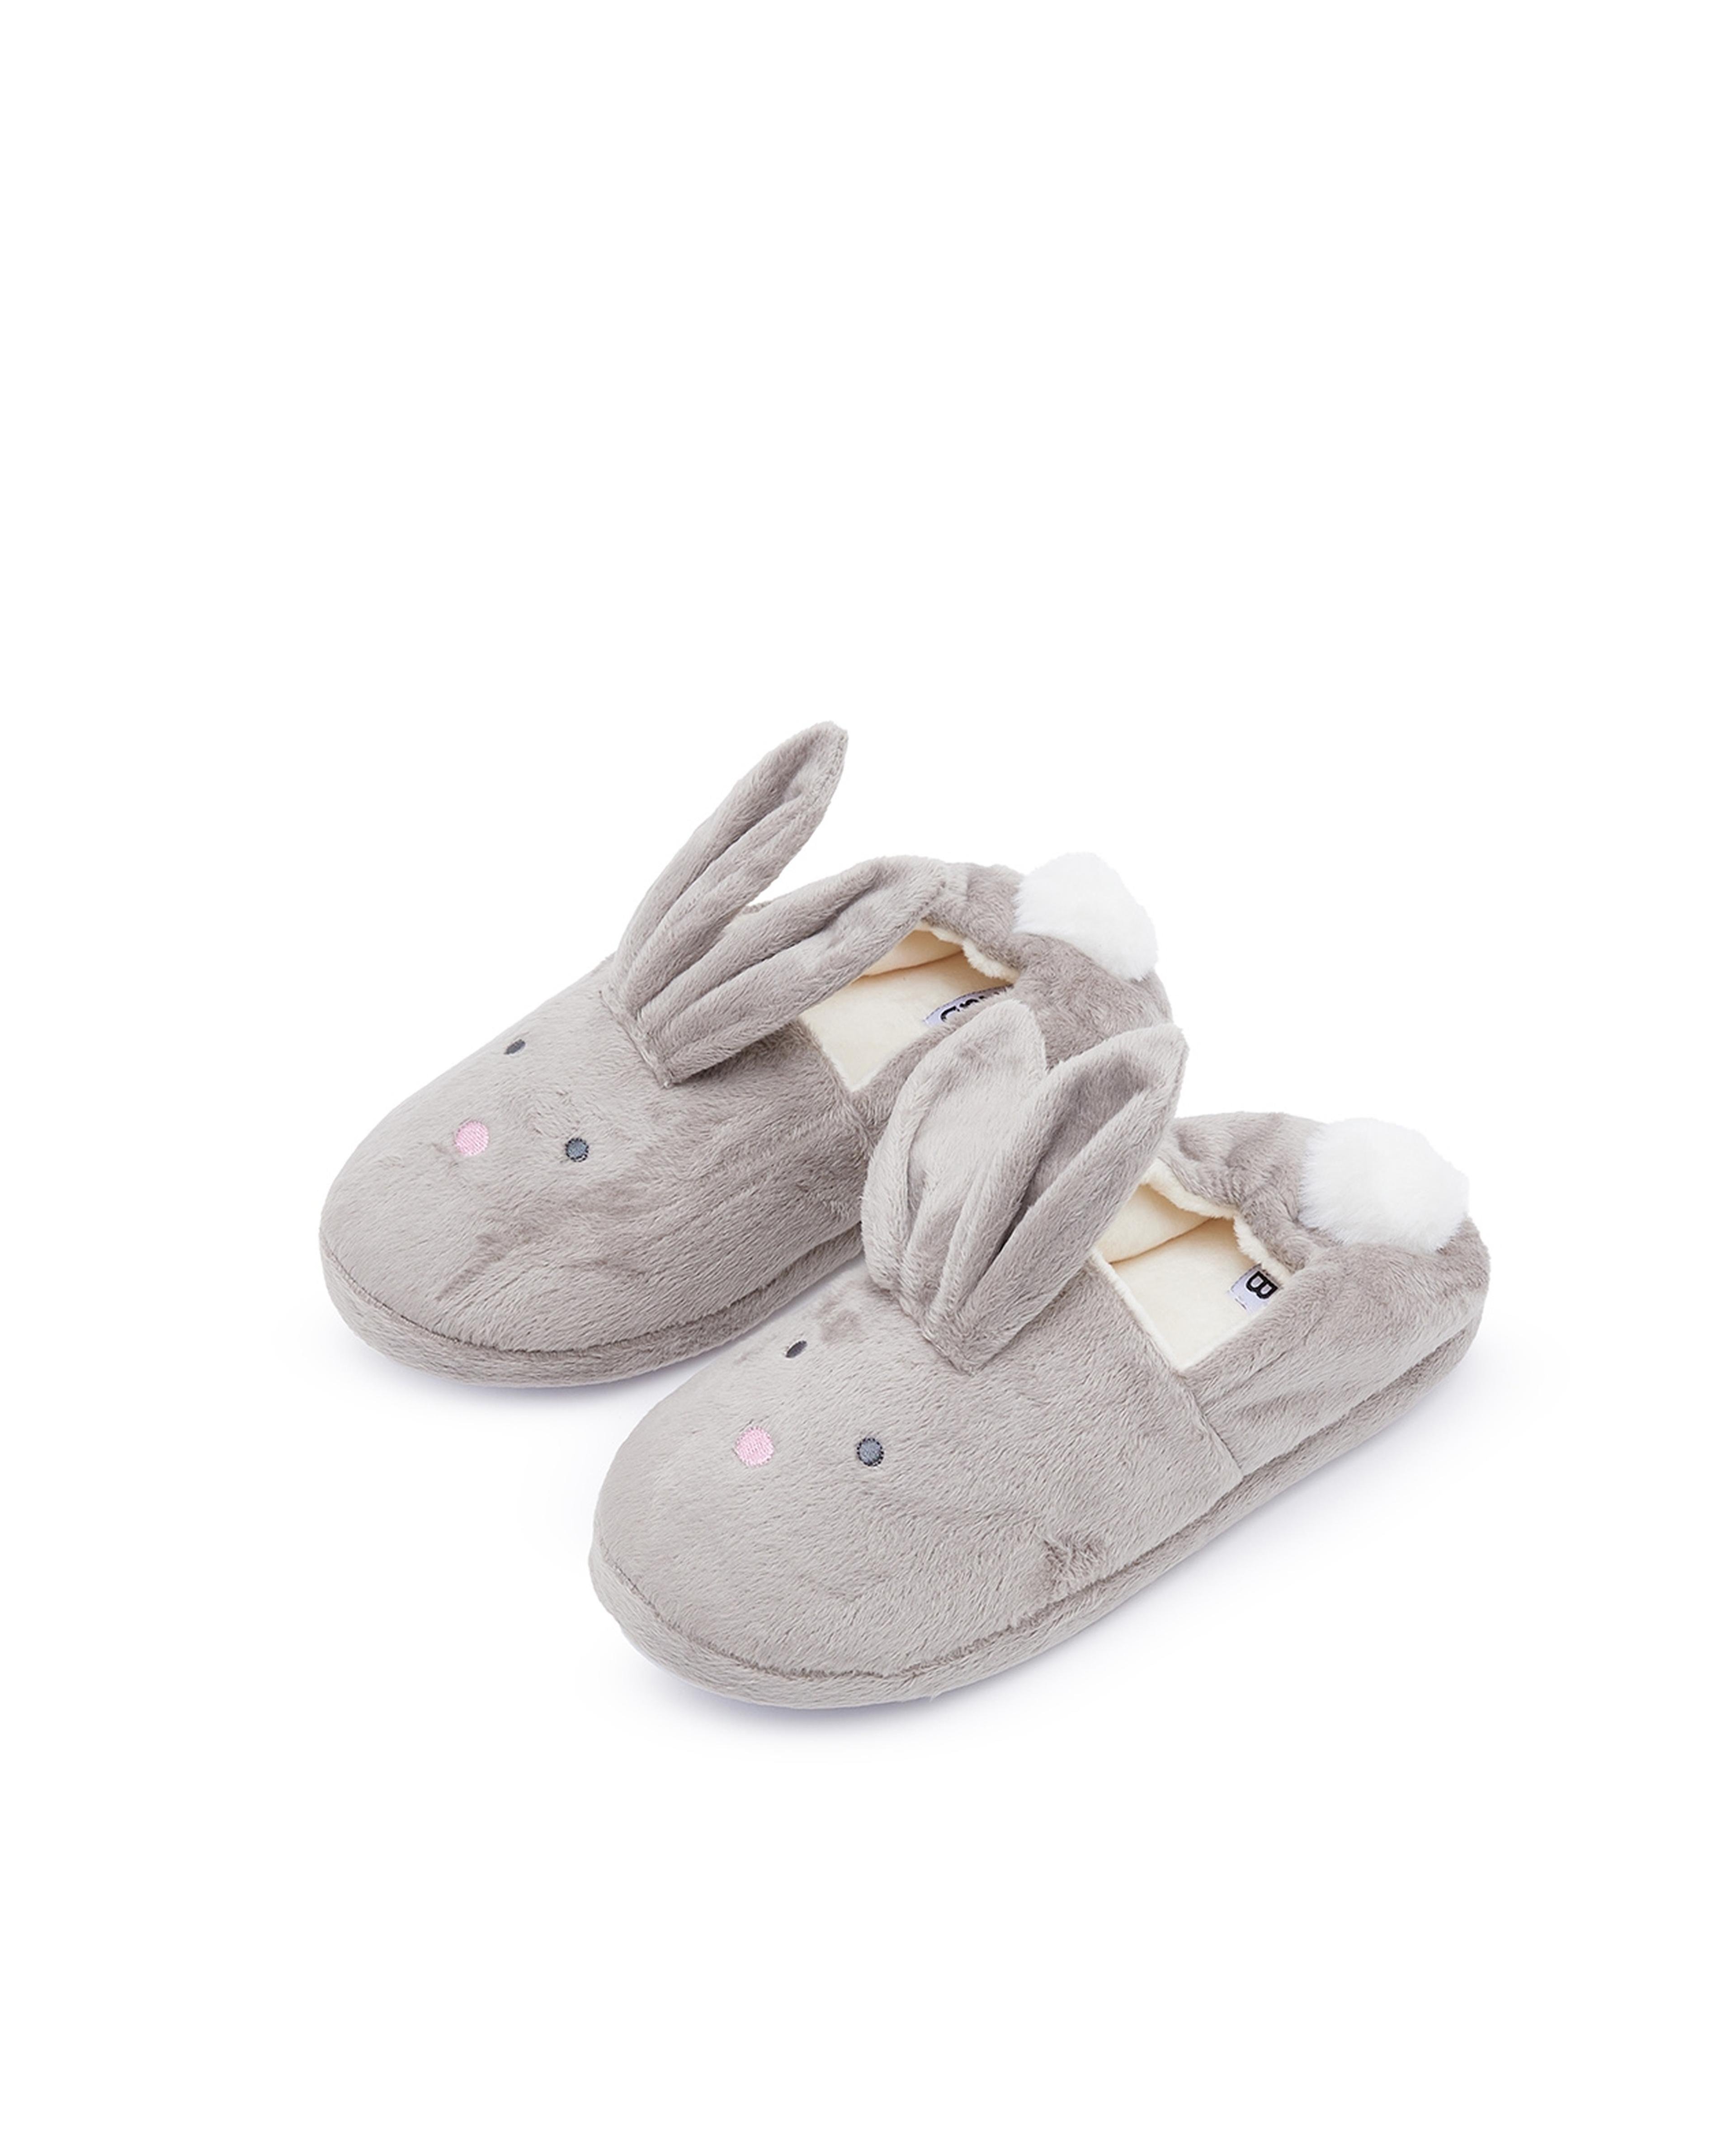 Bunny Applique Bedroom Slippers